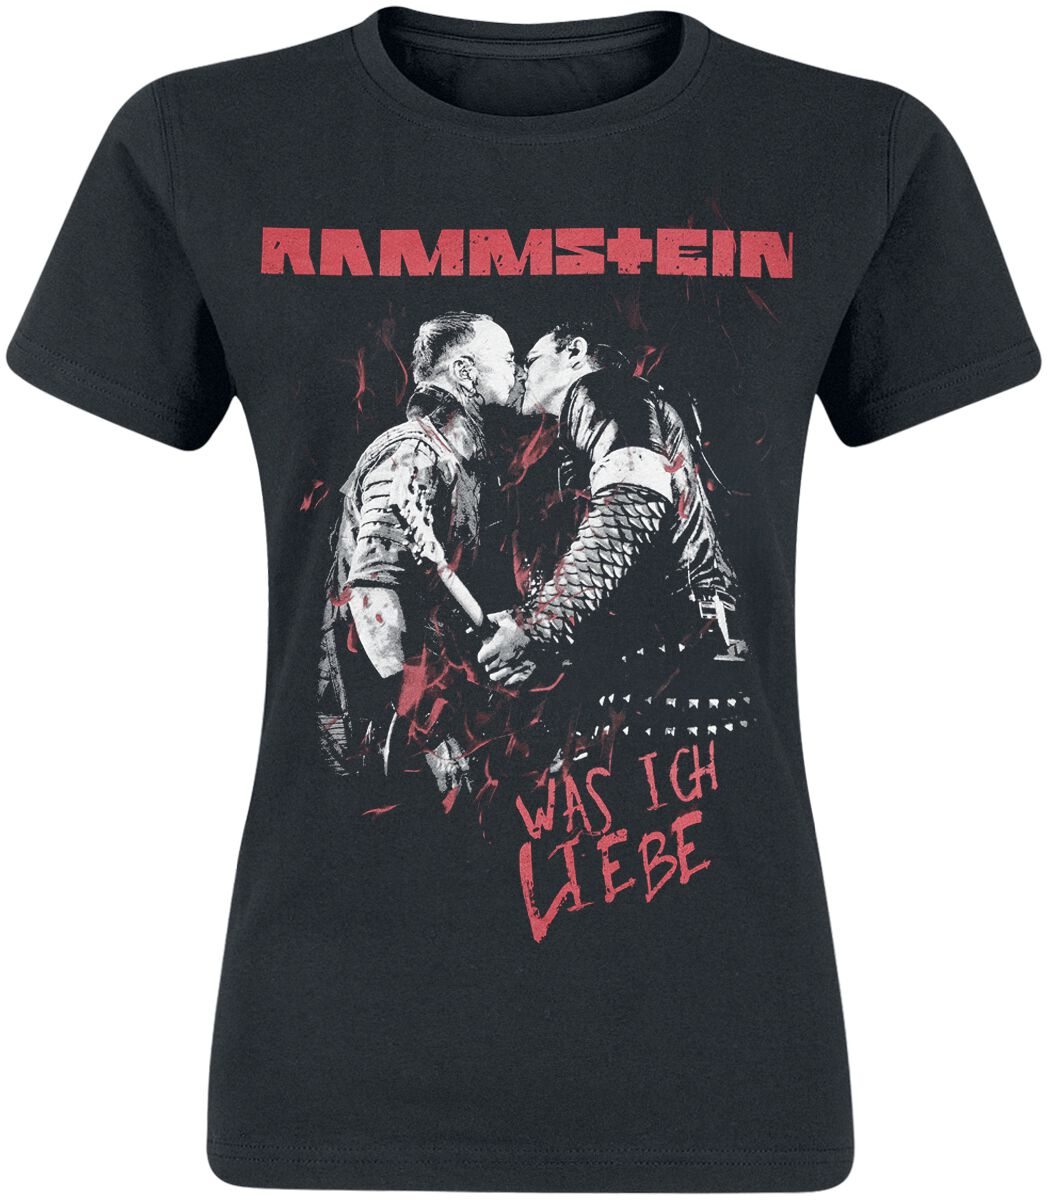 Rammstein T-Shirt - Was Ich Liebe - S bis XXL - für Damen - Größe S - schwarz  - Lizenziertes Merchandise!